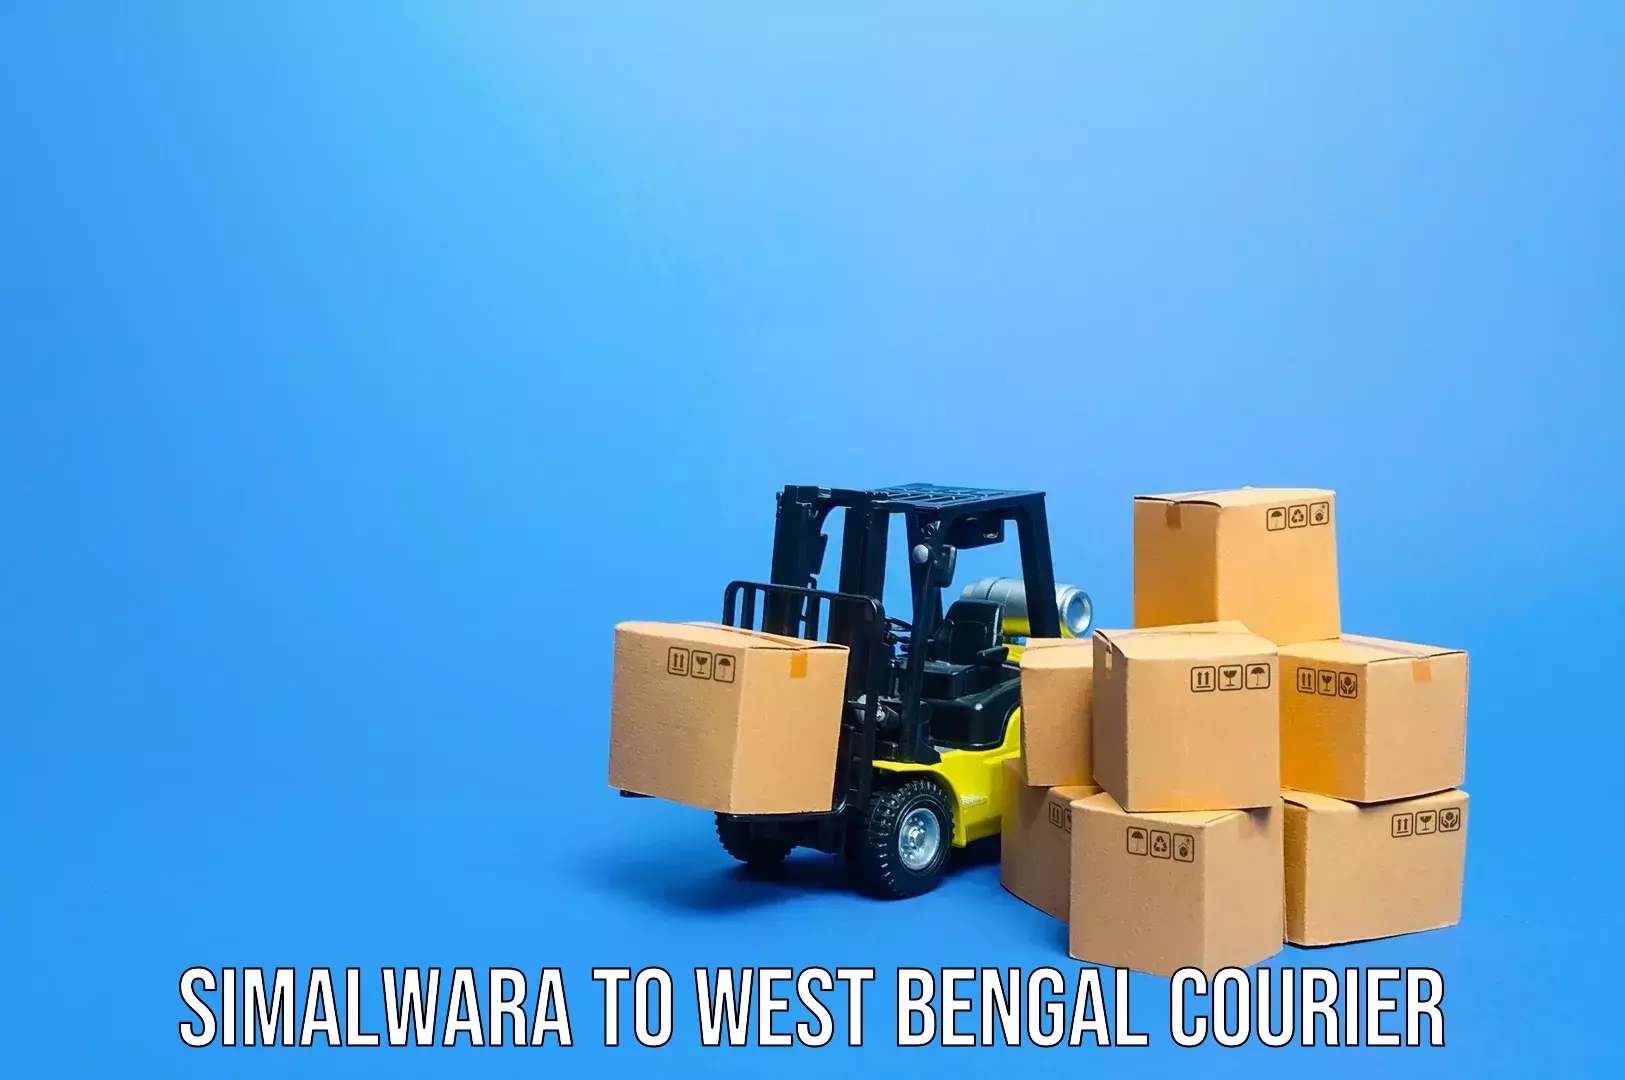 Baggage shipping service Simalwara to West Bengal